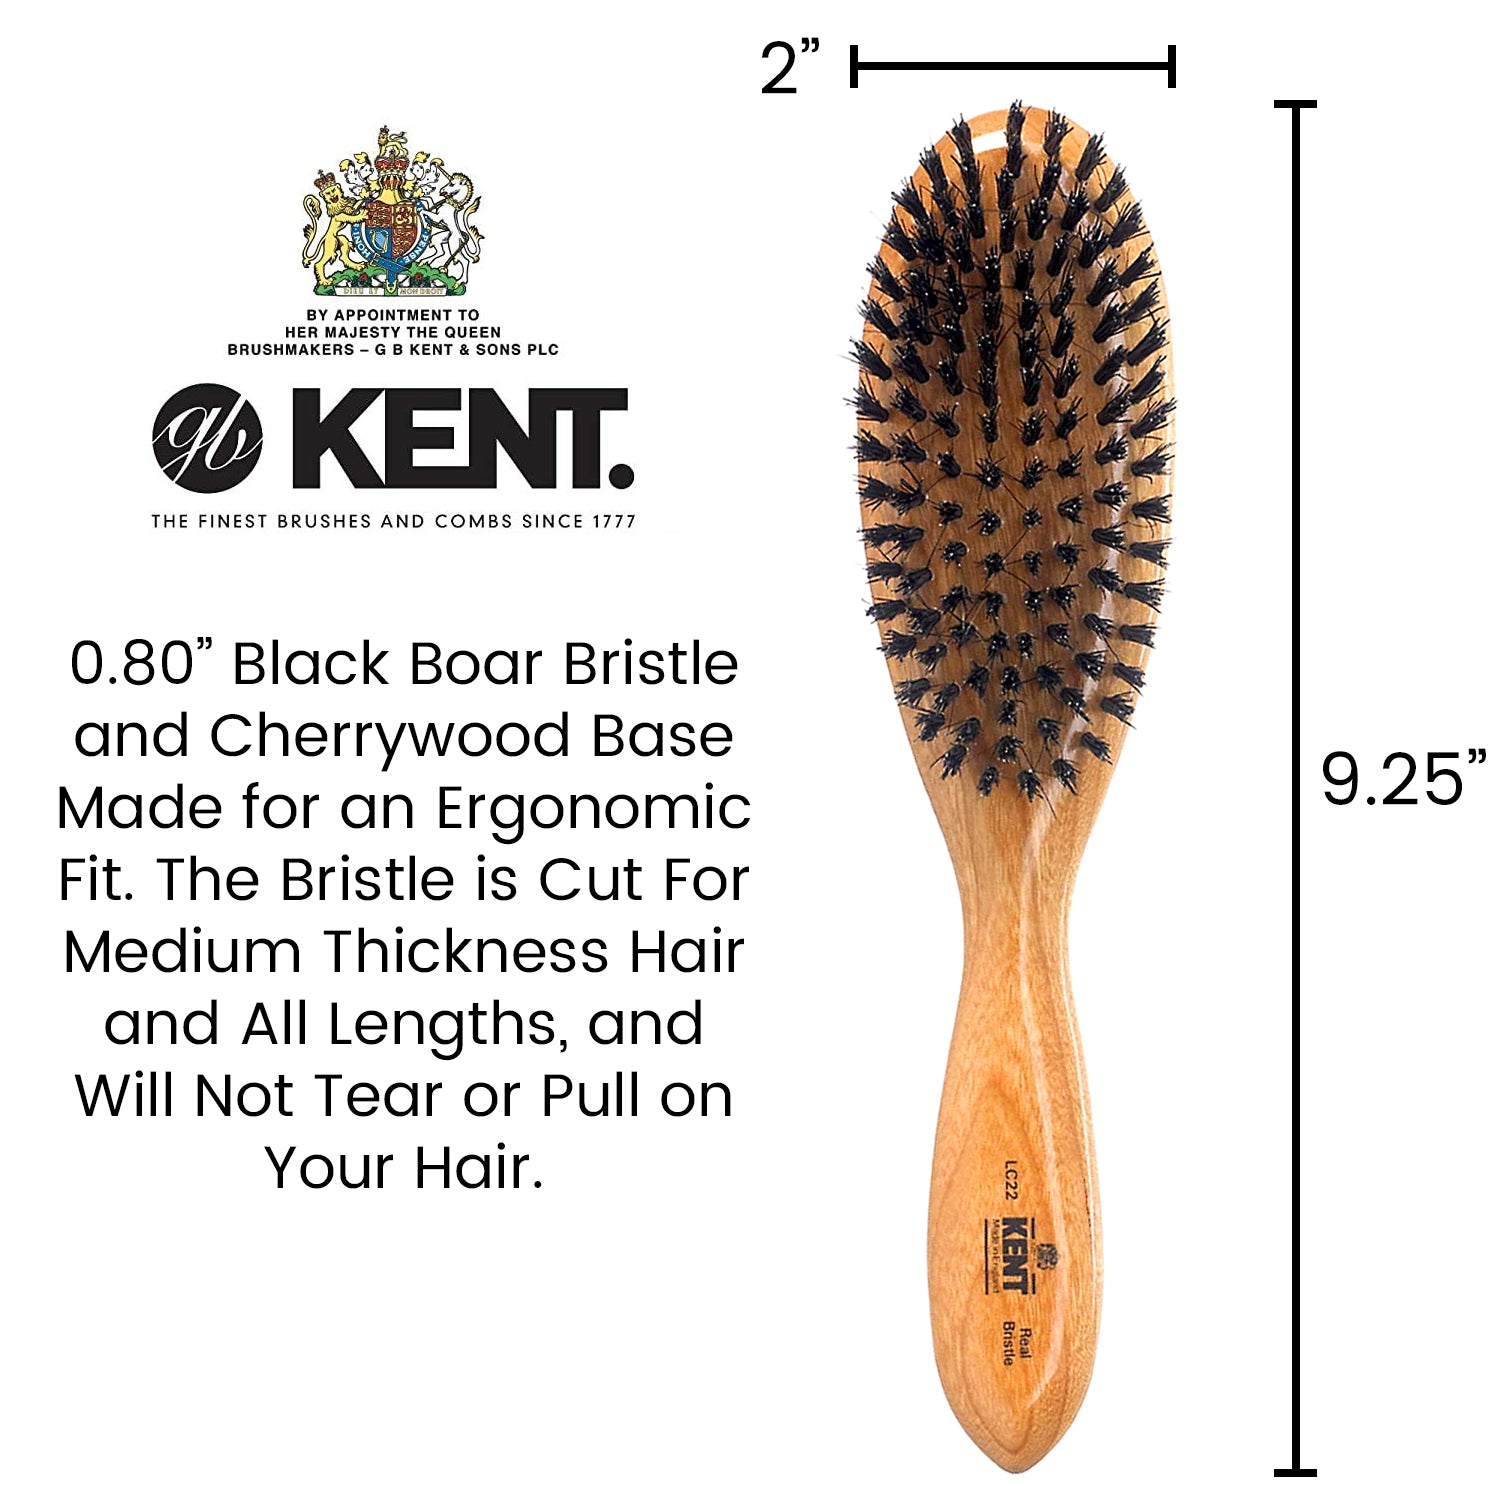 Kent Cherrywood Pure Black Bristle Oval Grooming Hair Brush